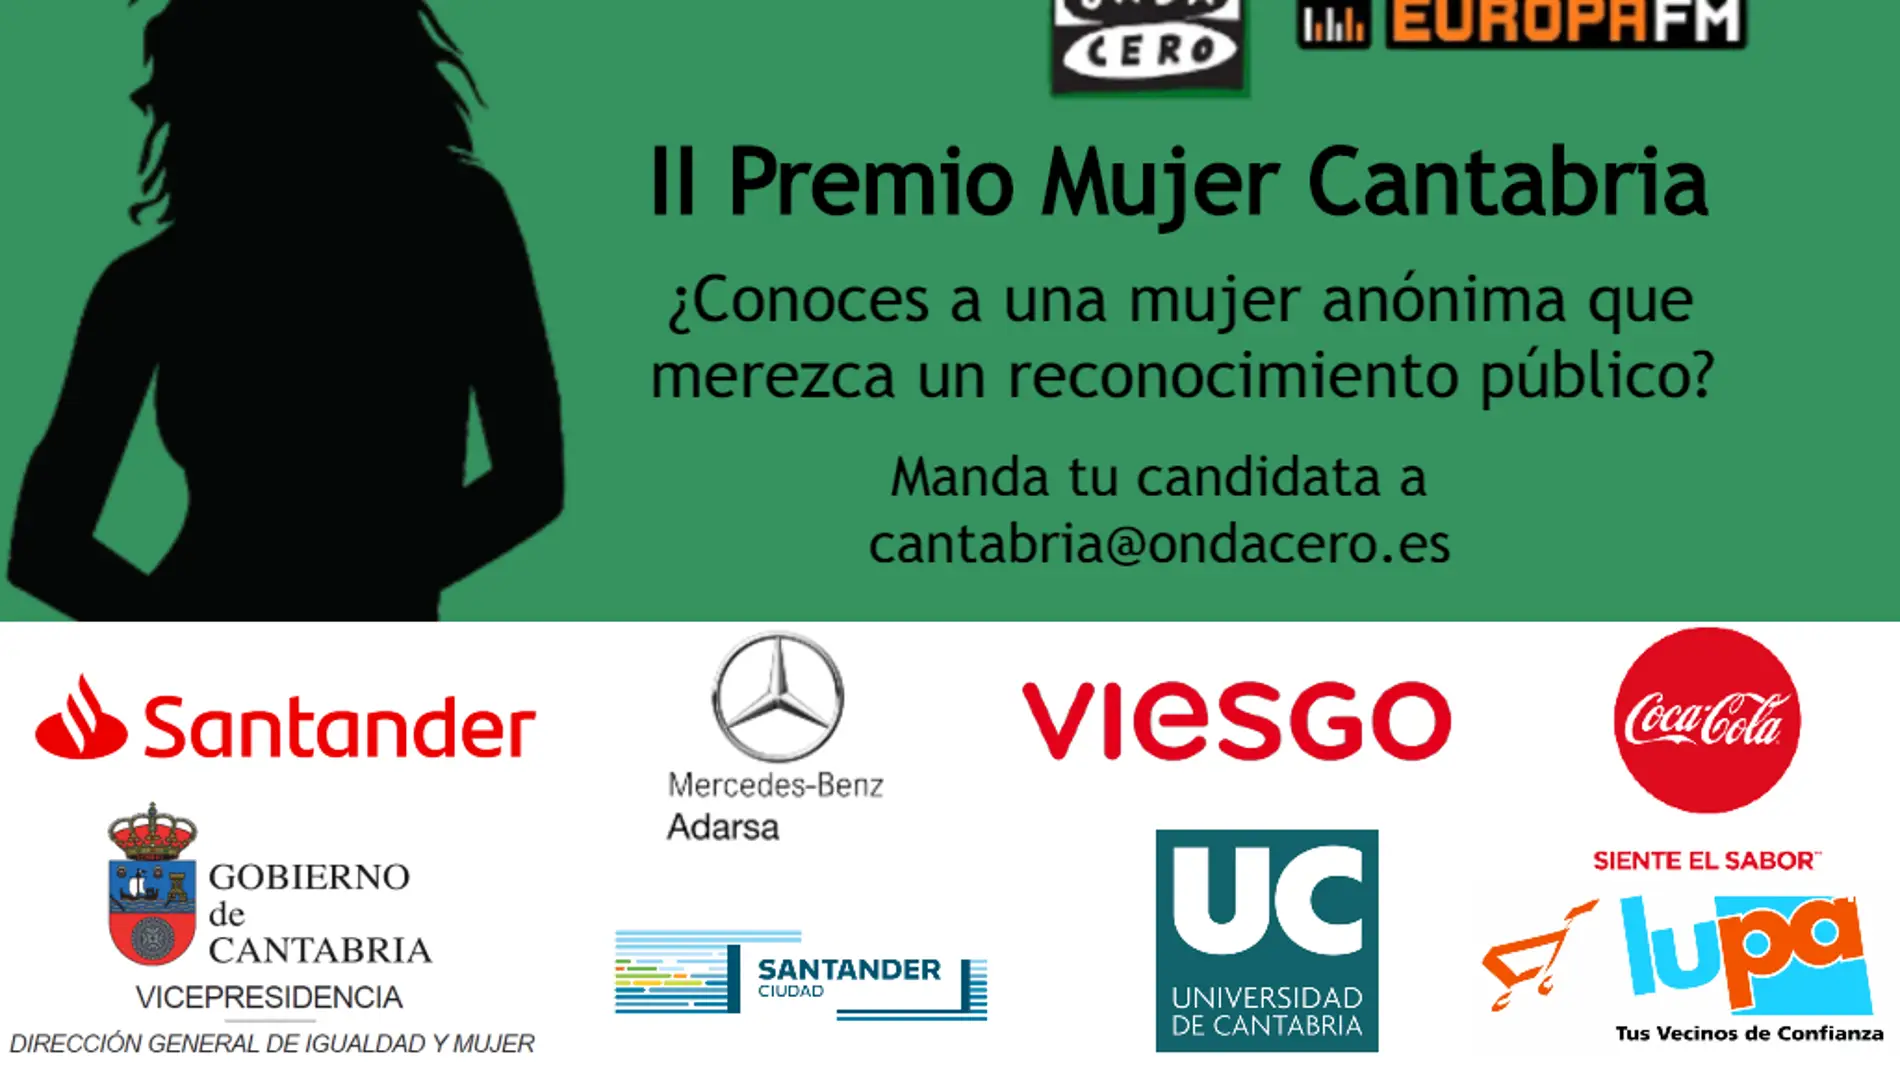 II Premio Mujer Cantabria